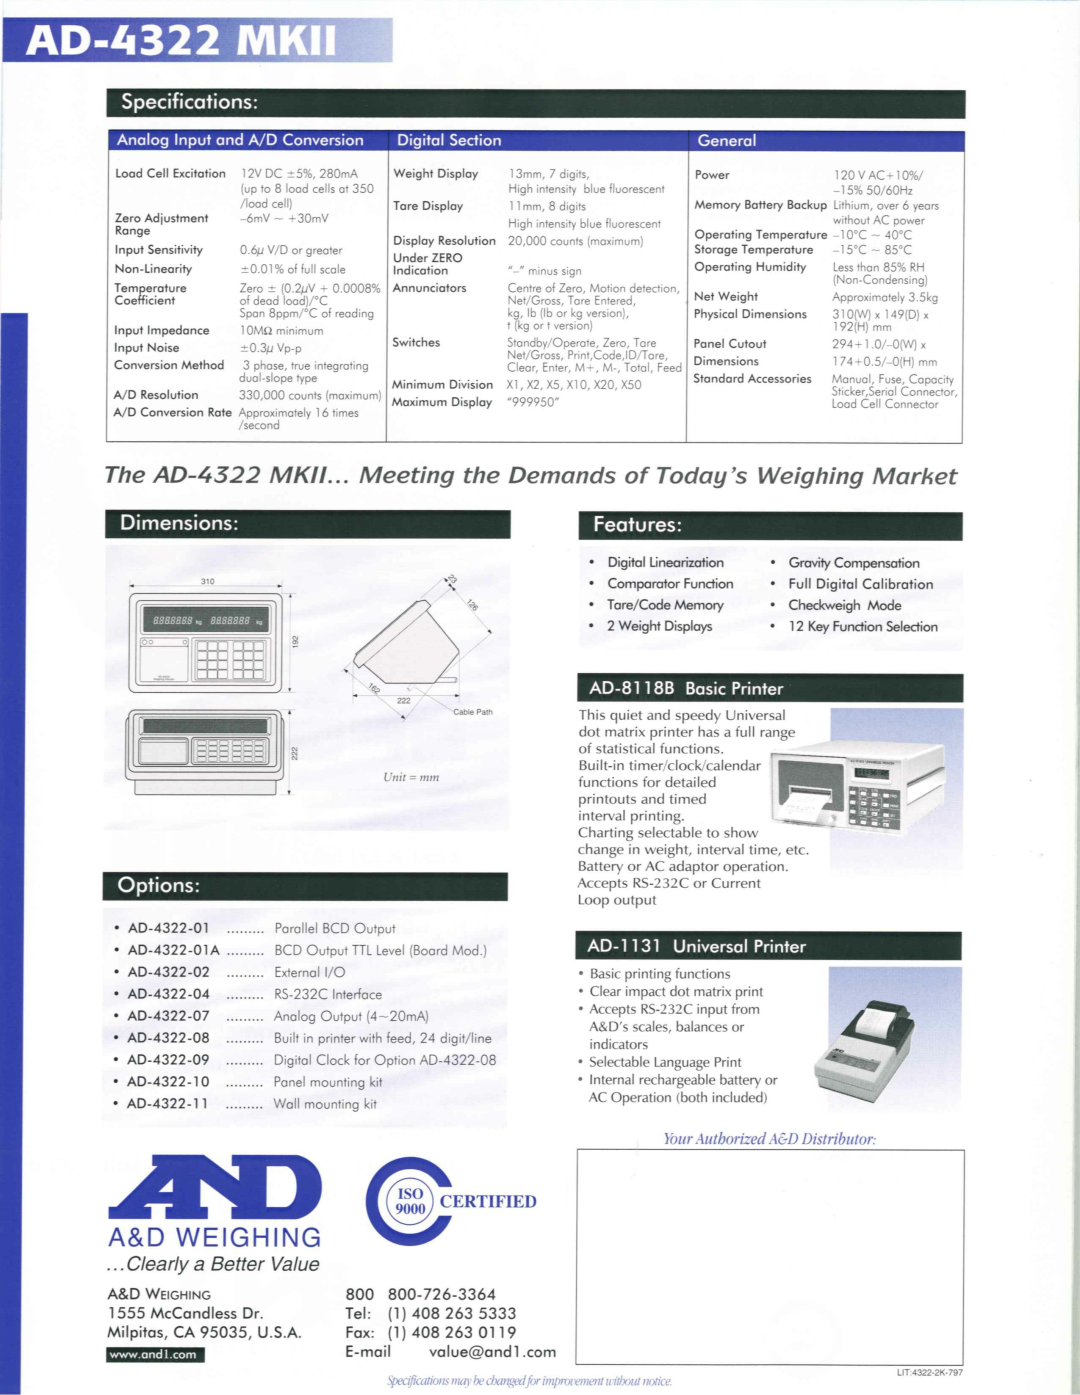 A&D AD-4322 MKII manual 